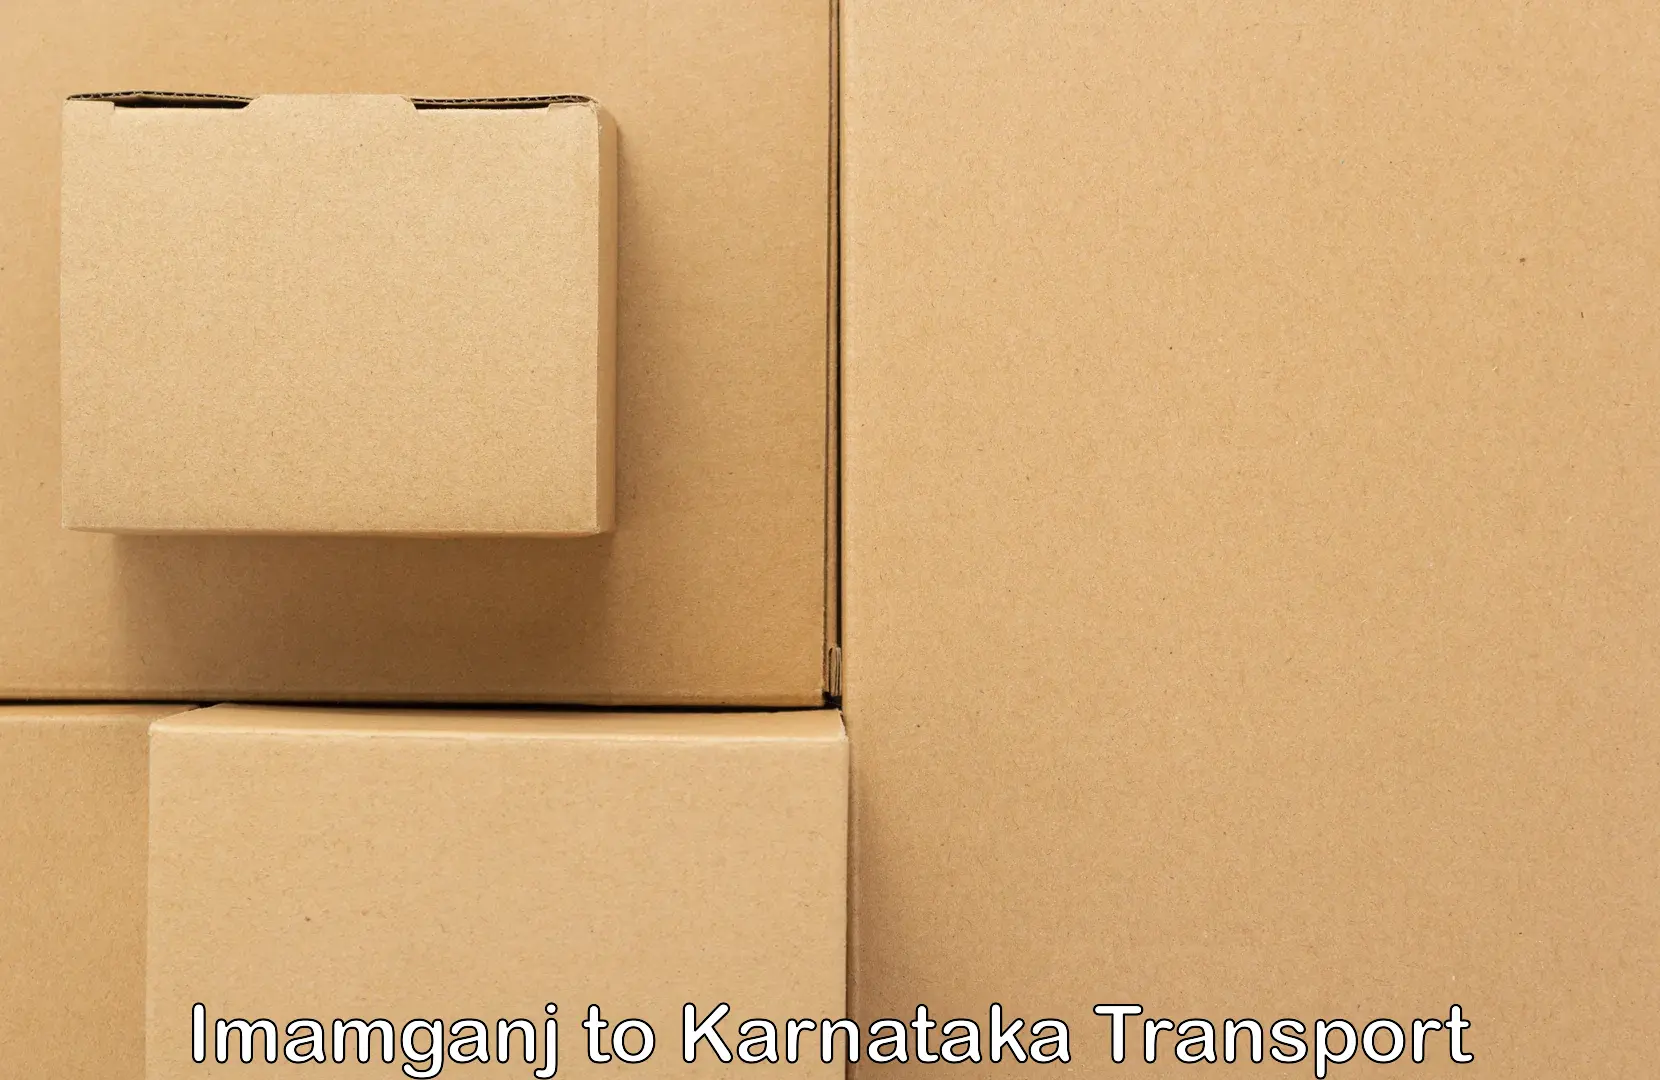 Daily parcel service transport in Imamganj to Ittigi